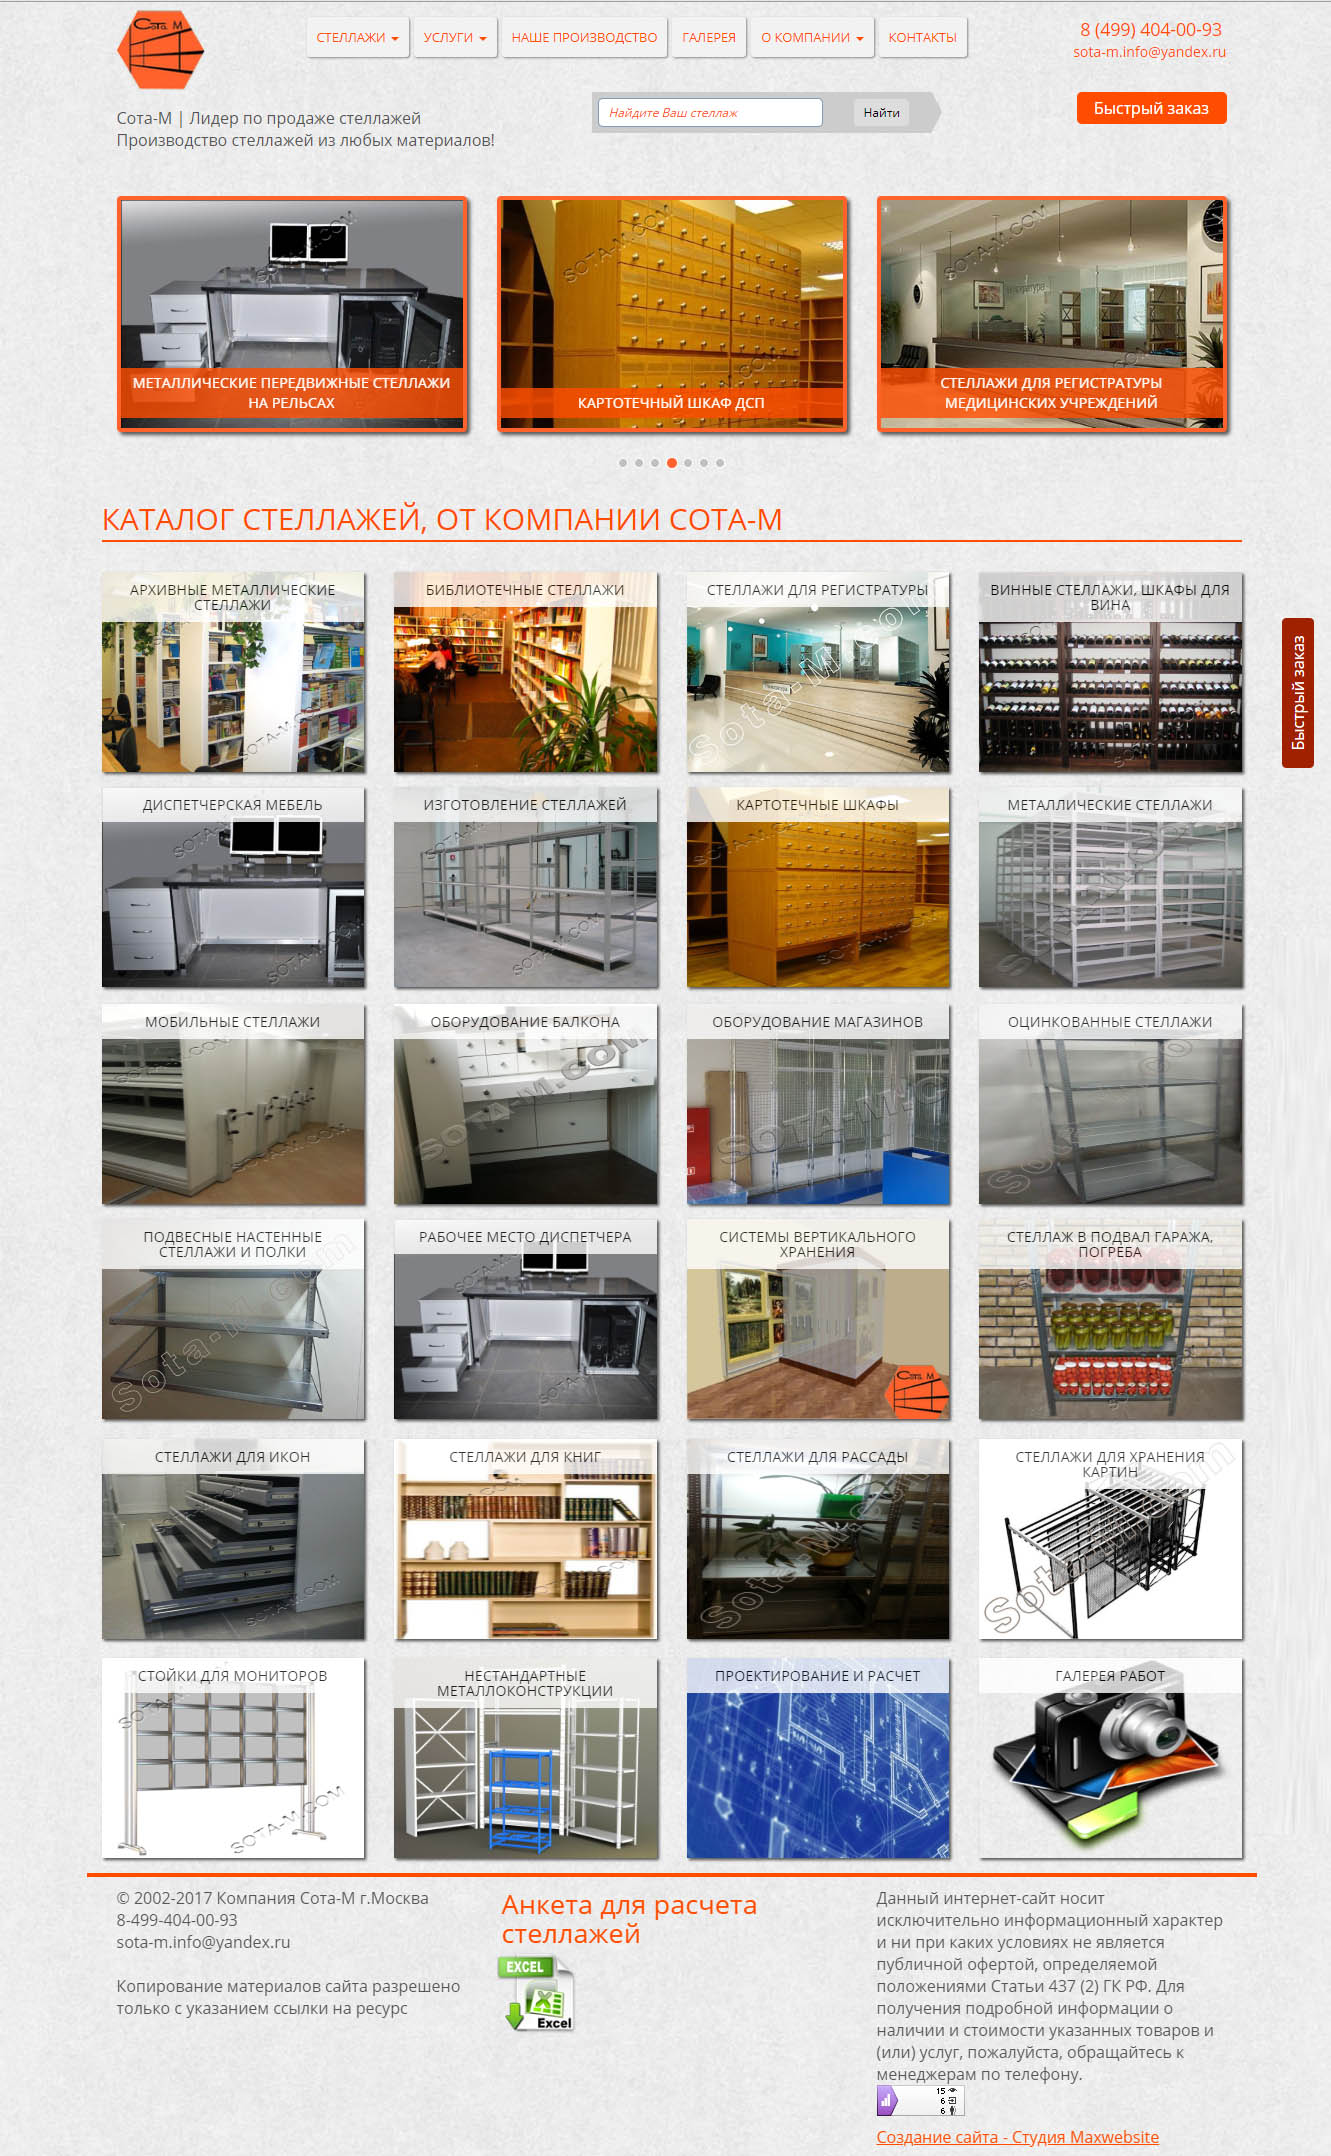 Сайт каталог компании, производящей металлические стеллажи г.Москва